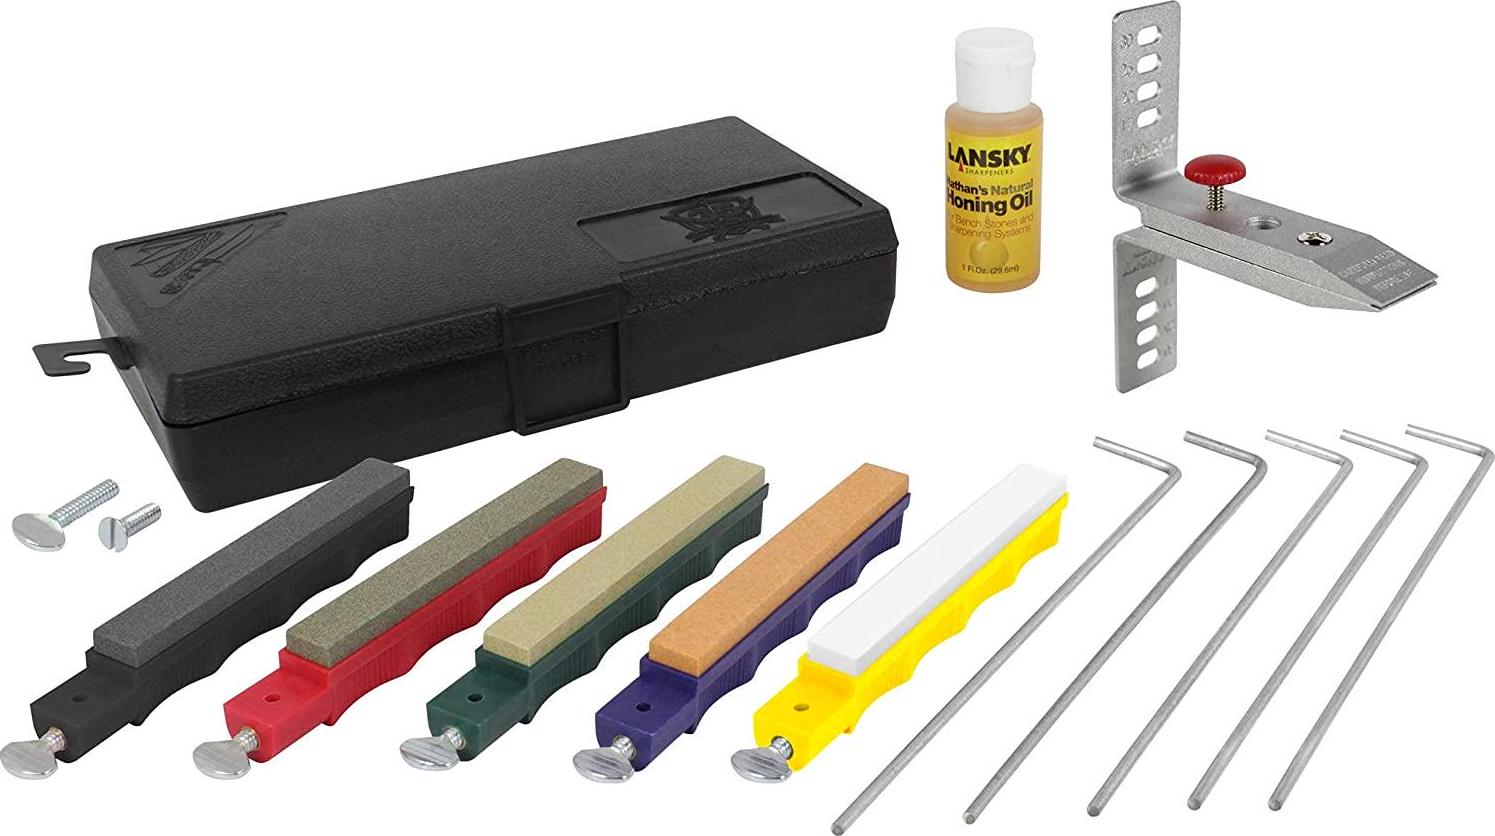 Lansky, Lansky LKCLX Deluxe Sharpening Kit, Multicolour, 1 Pack